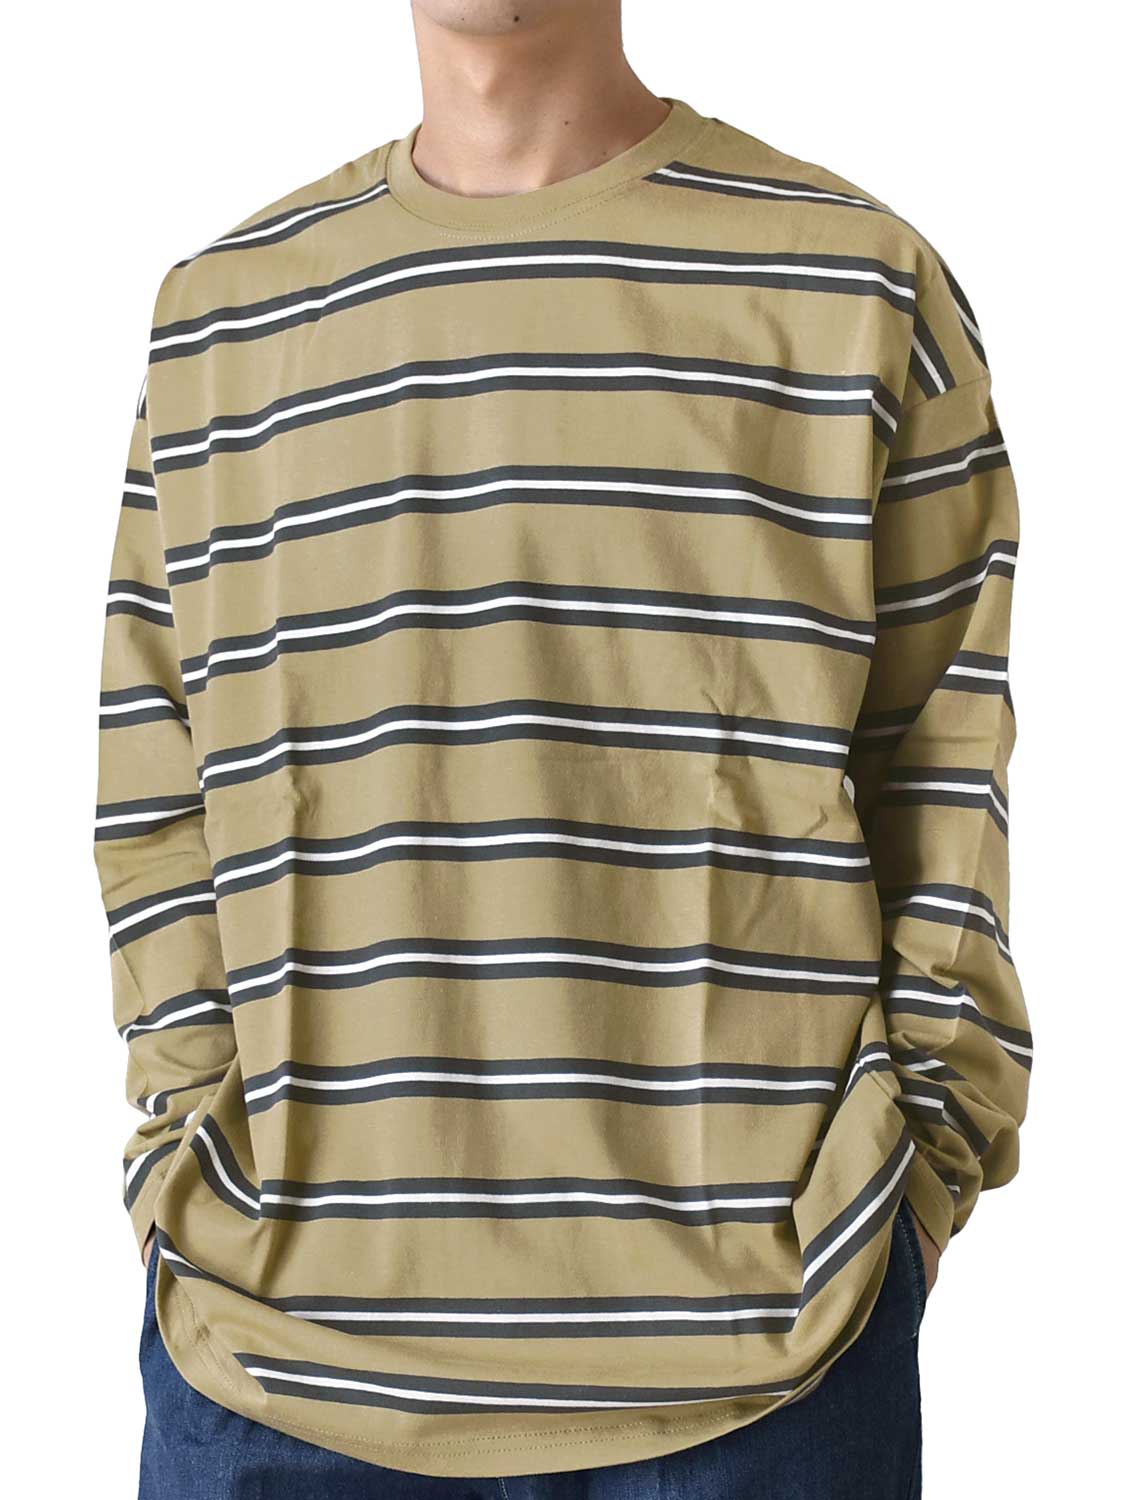 Tシャツ メンズ 長袖 マルチボーダー 送料無料 通販YC ロングTシャツ ロンT